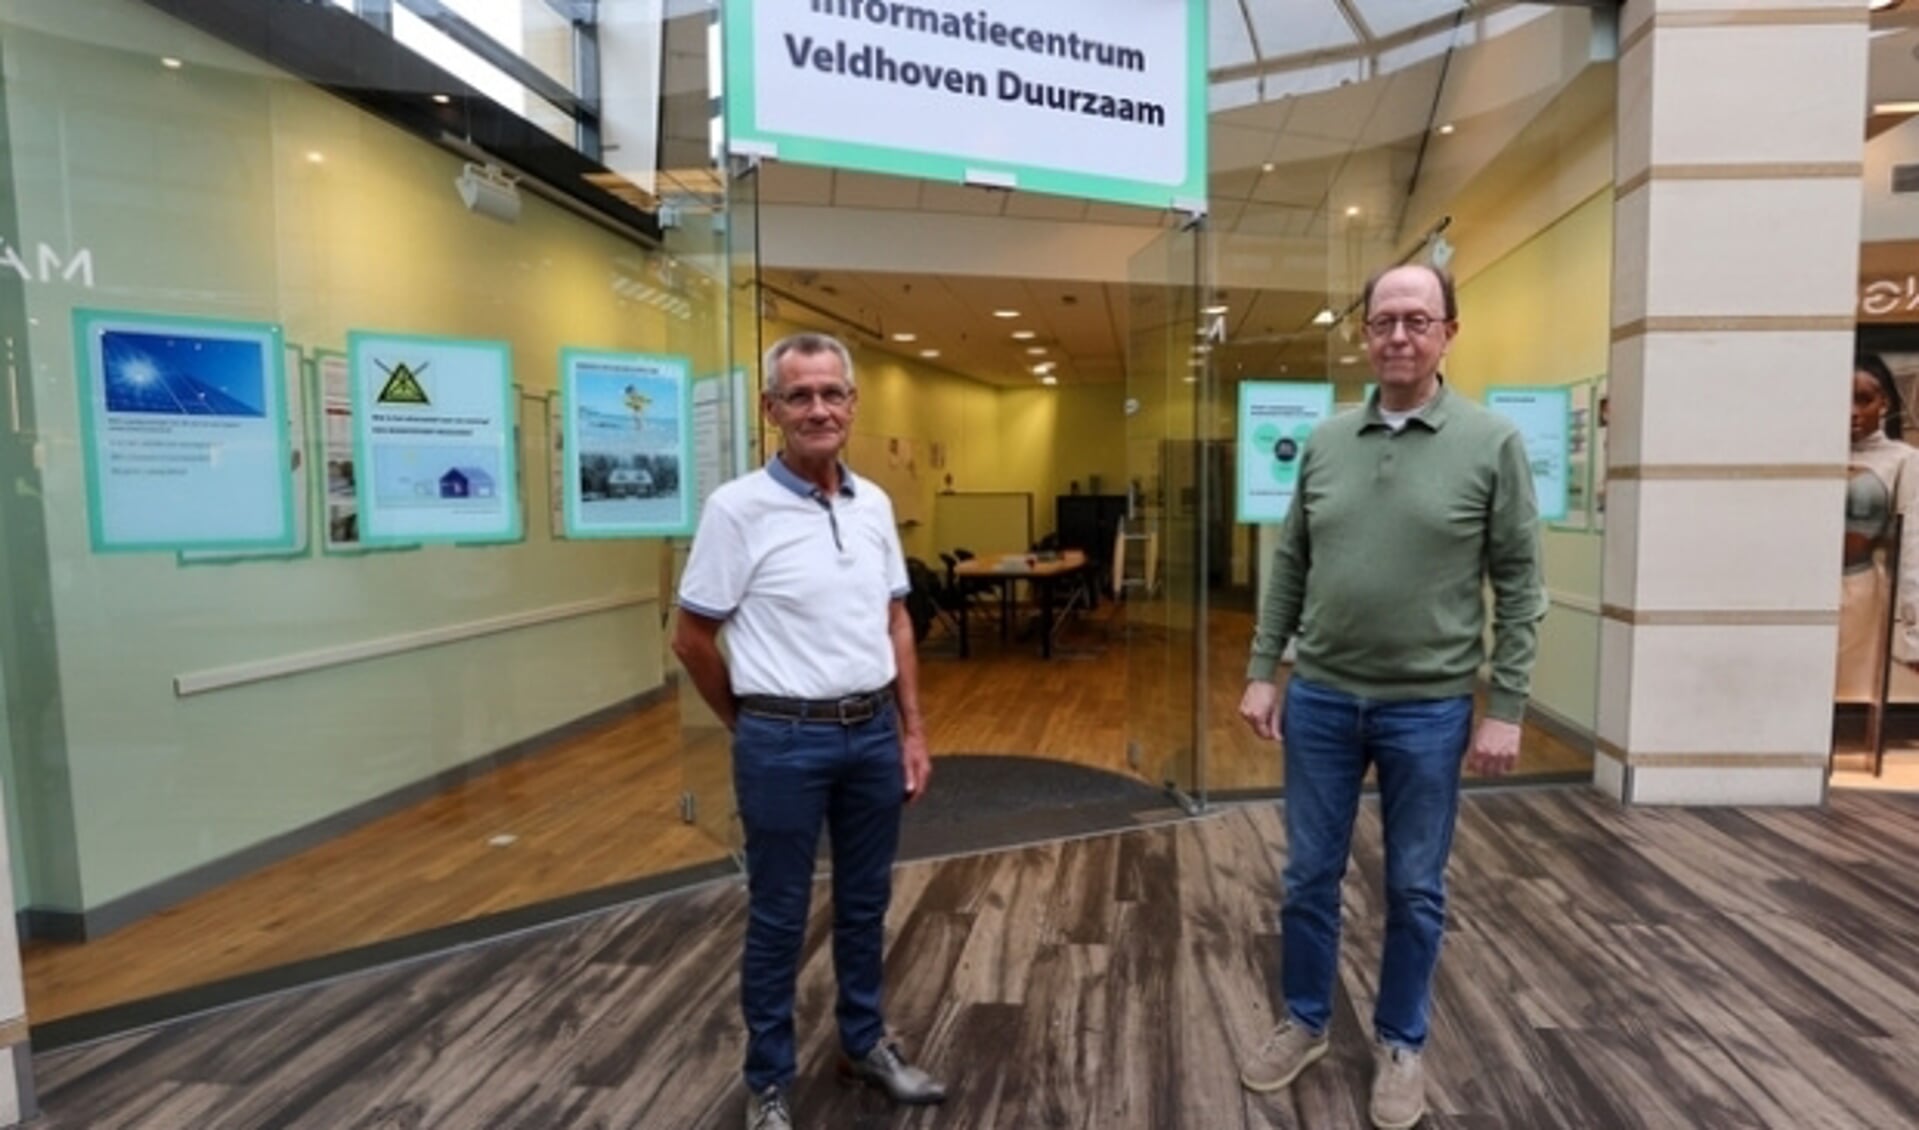 "Een droom is werkelijkheid geworden", vertellen Ton Knaapen (voorzitter) en Ad van Rooij (vice-voorzitter) van de vereniging Veldhoven Duurzaam. 